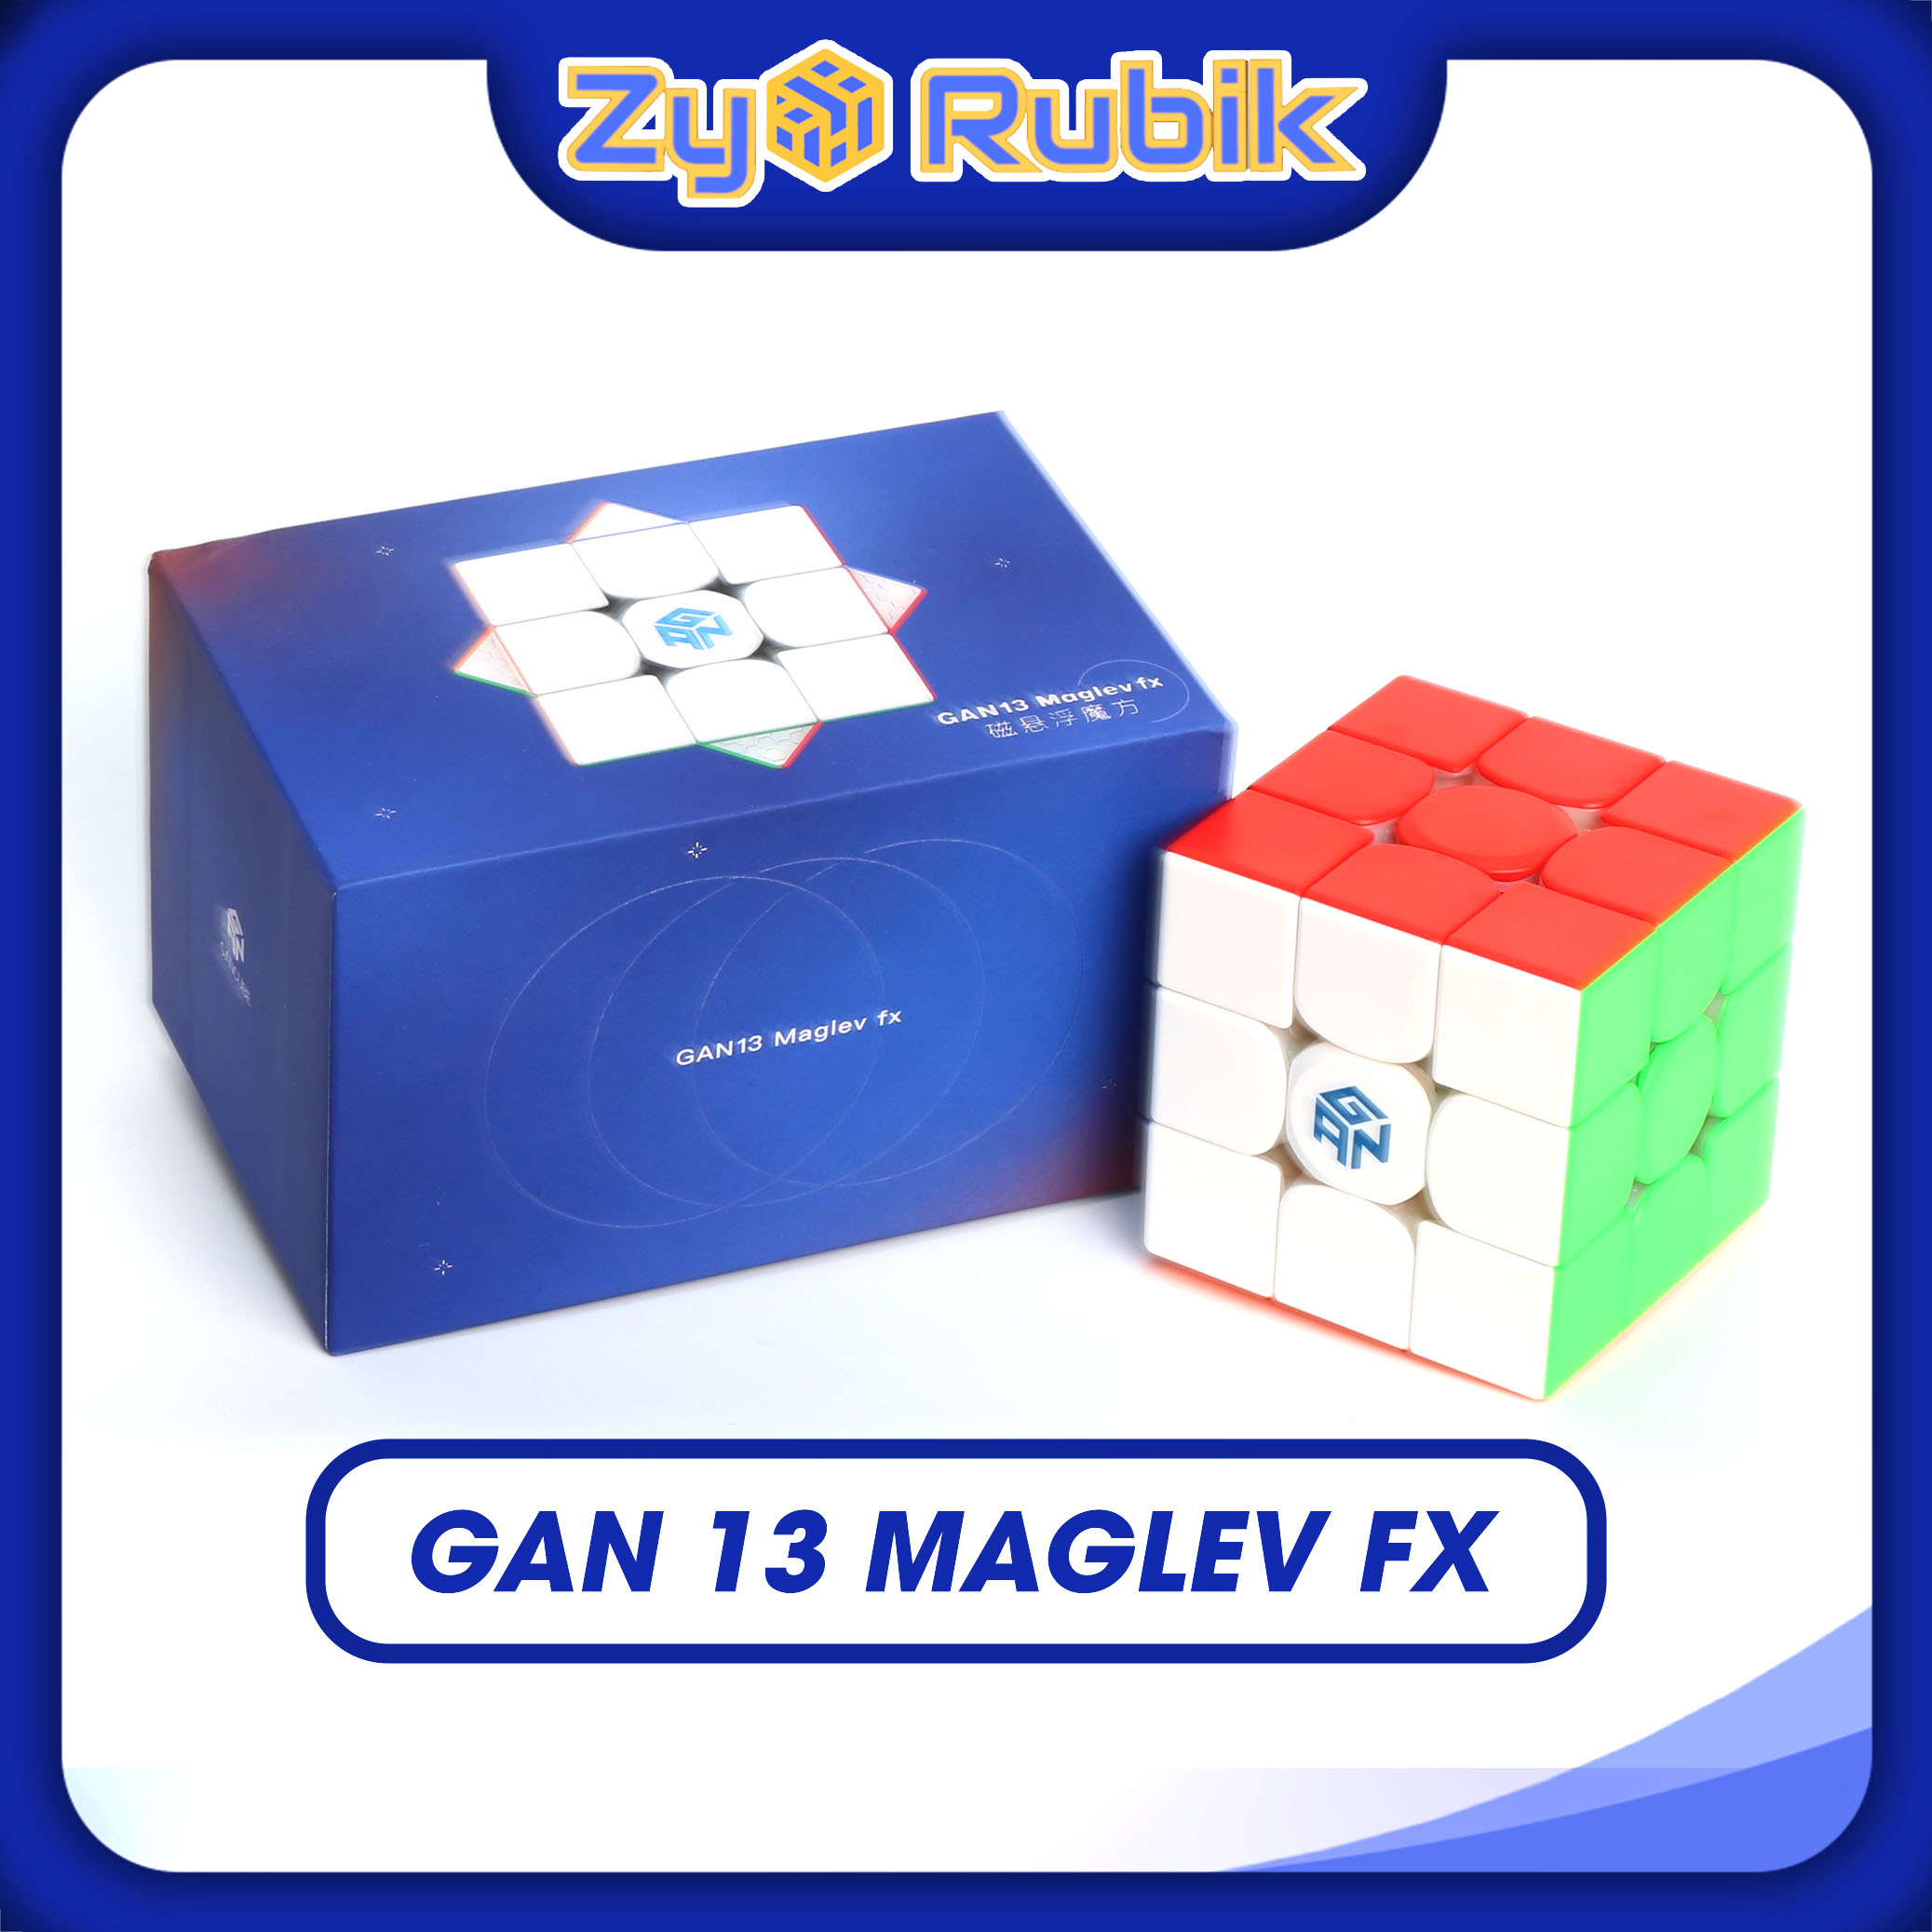 Cảm Nhận về Gan 356 M  Cube giá rẻ đáng mua của Gans  YouTube